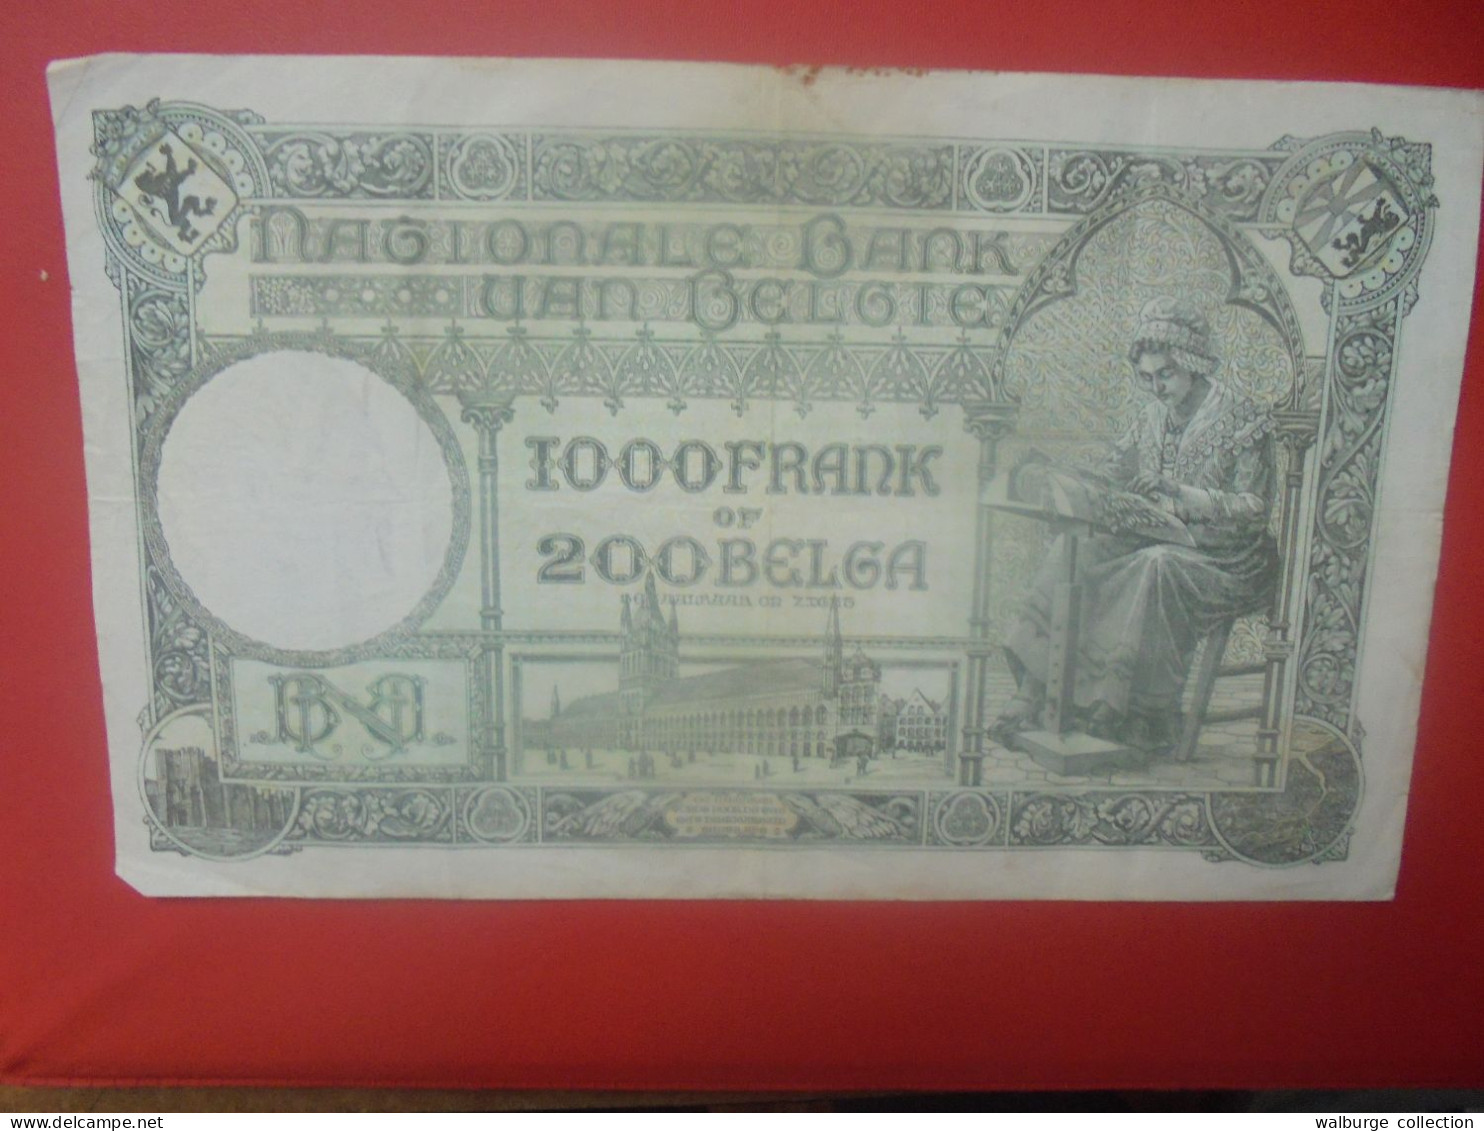 BELGIQUE 1000 Francs 1938 Circuler (B.18) - 1000 Francos & 1000 Francos-200 Belgas